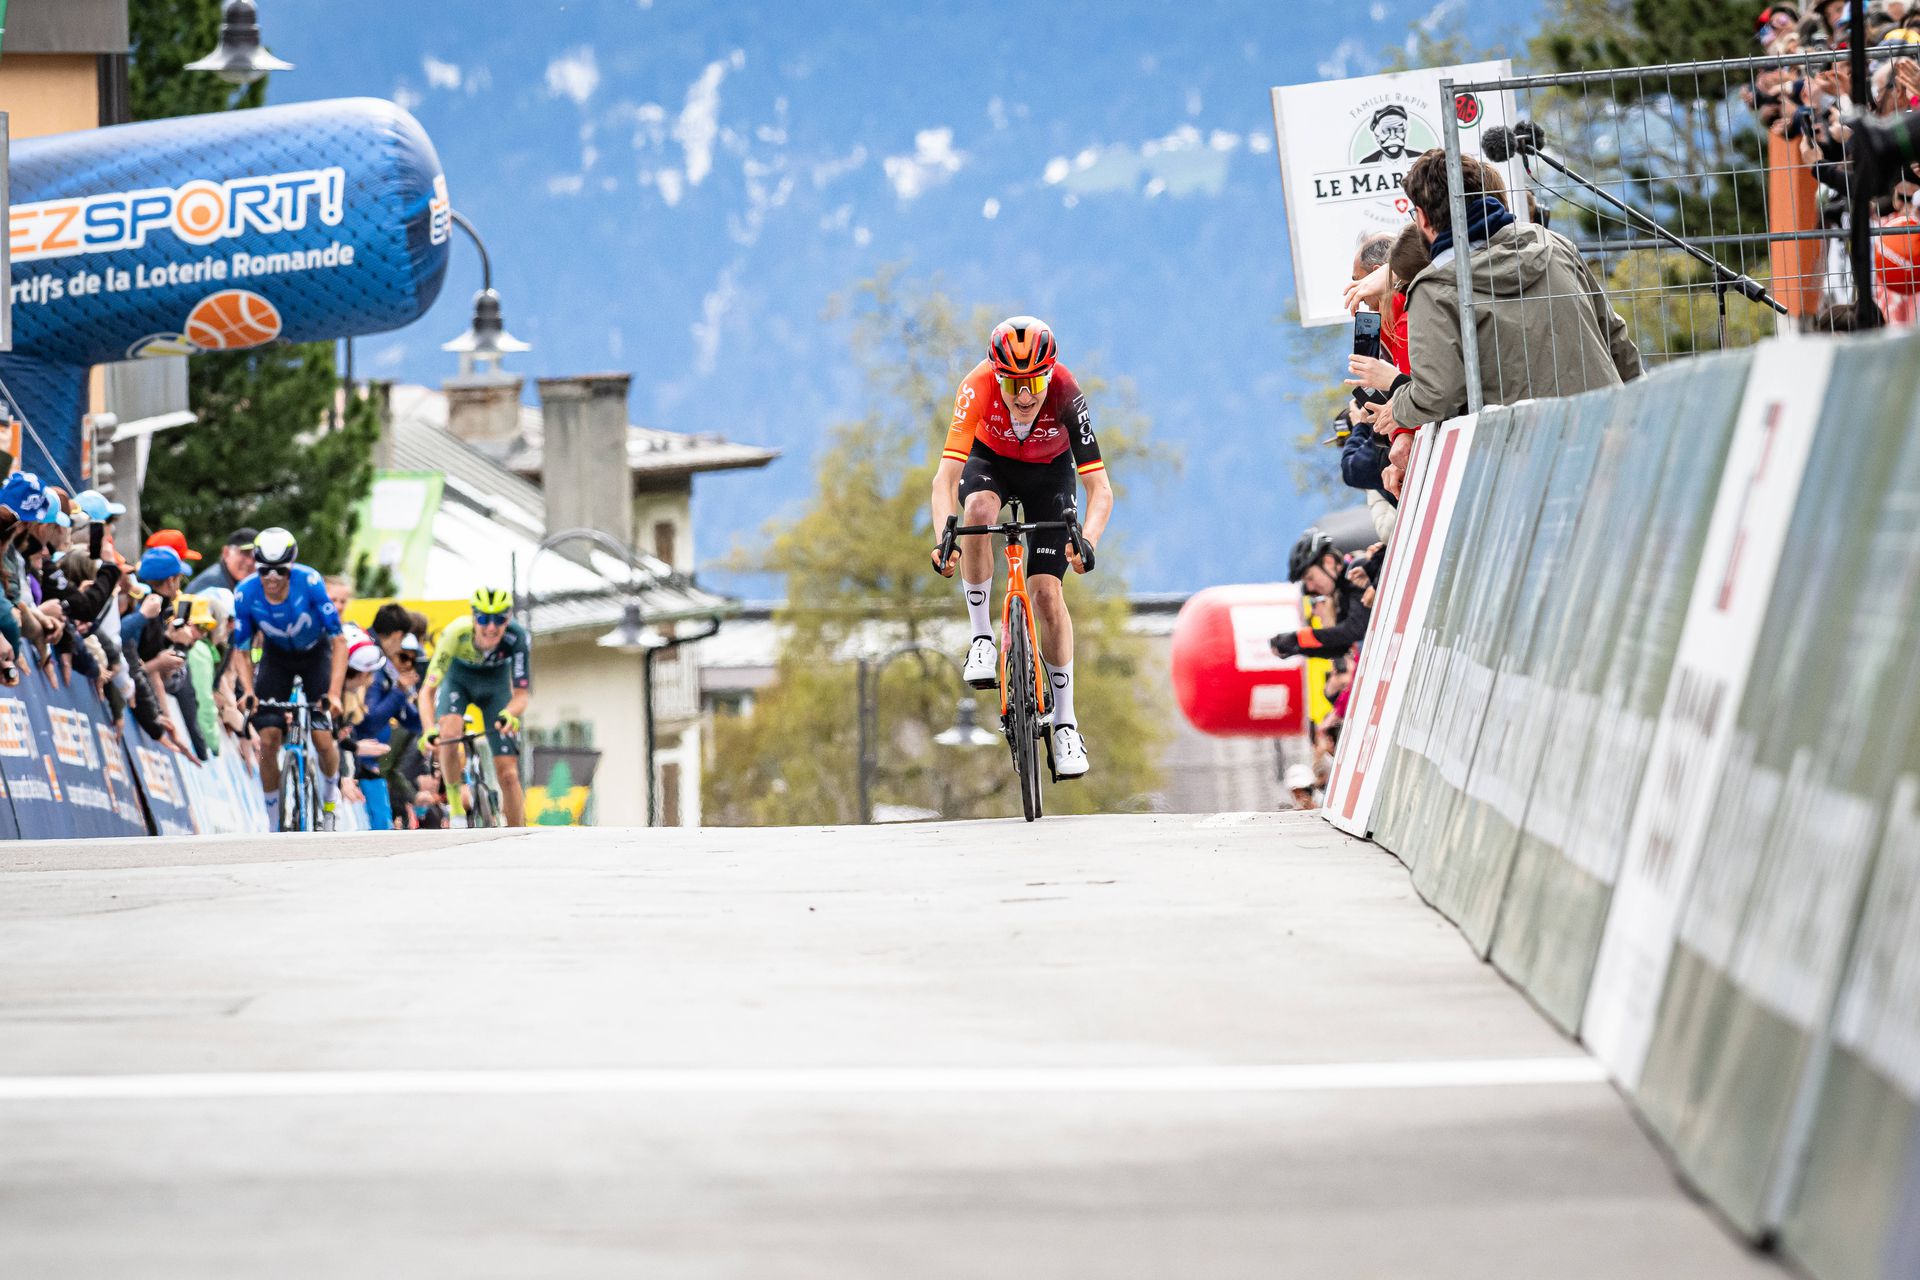 Španielsky cyklista Carlos Rodriguez vyhral 77. ročník pretekov Okolo Romandie. Zdroj: IMAGO